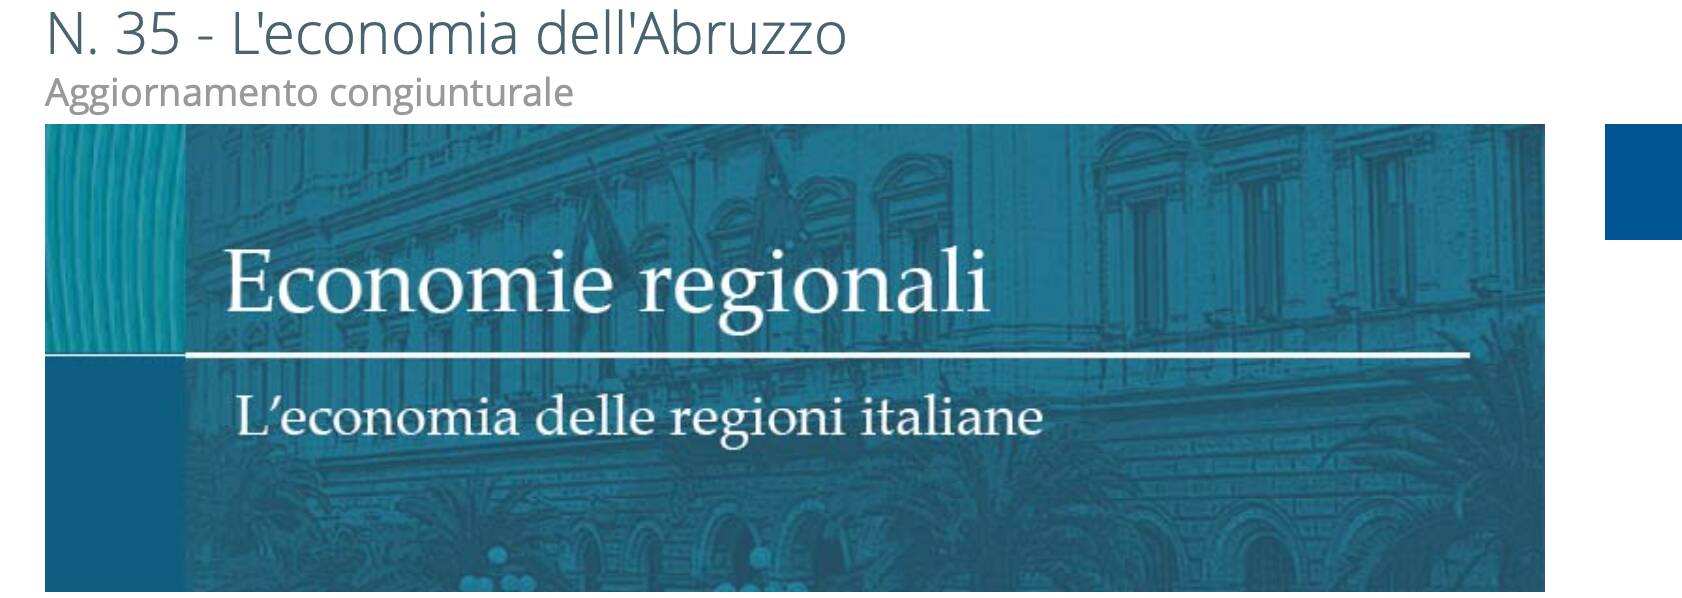 economia Regione Abruzzo Banca d'Italia